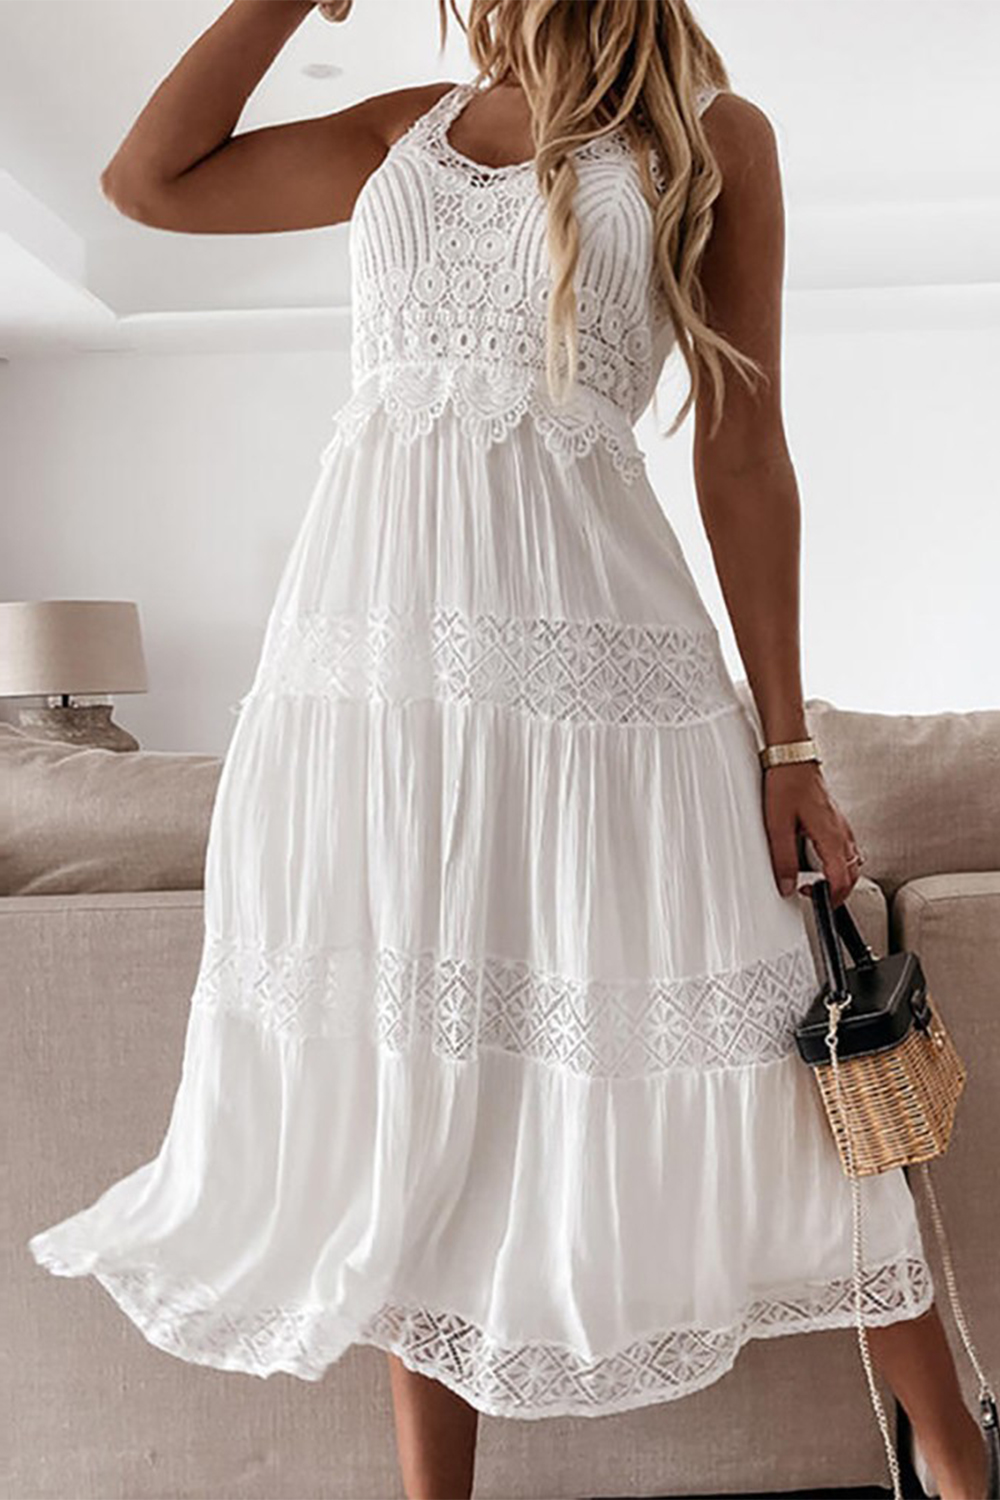  Boho A-Line Tea-length White Lace Beach Holiday Dress